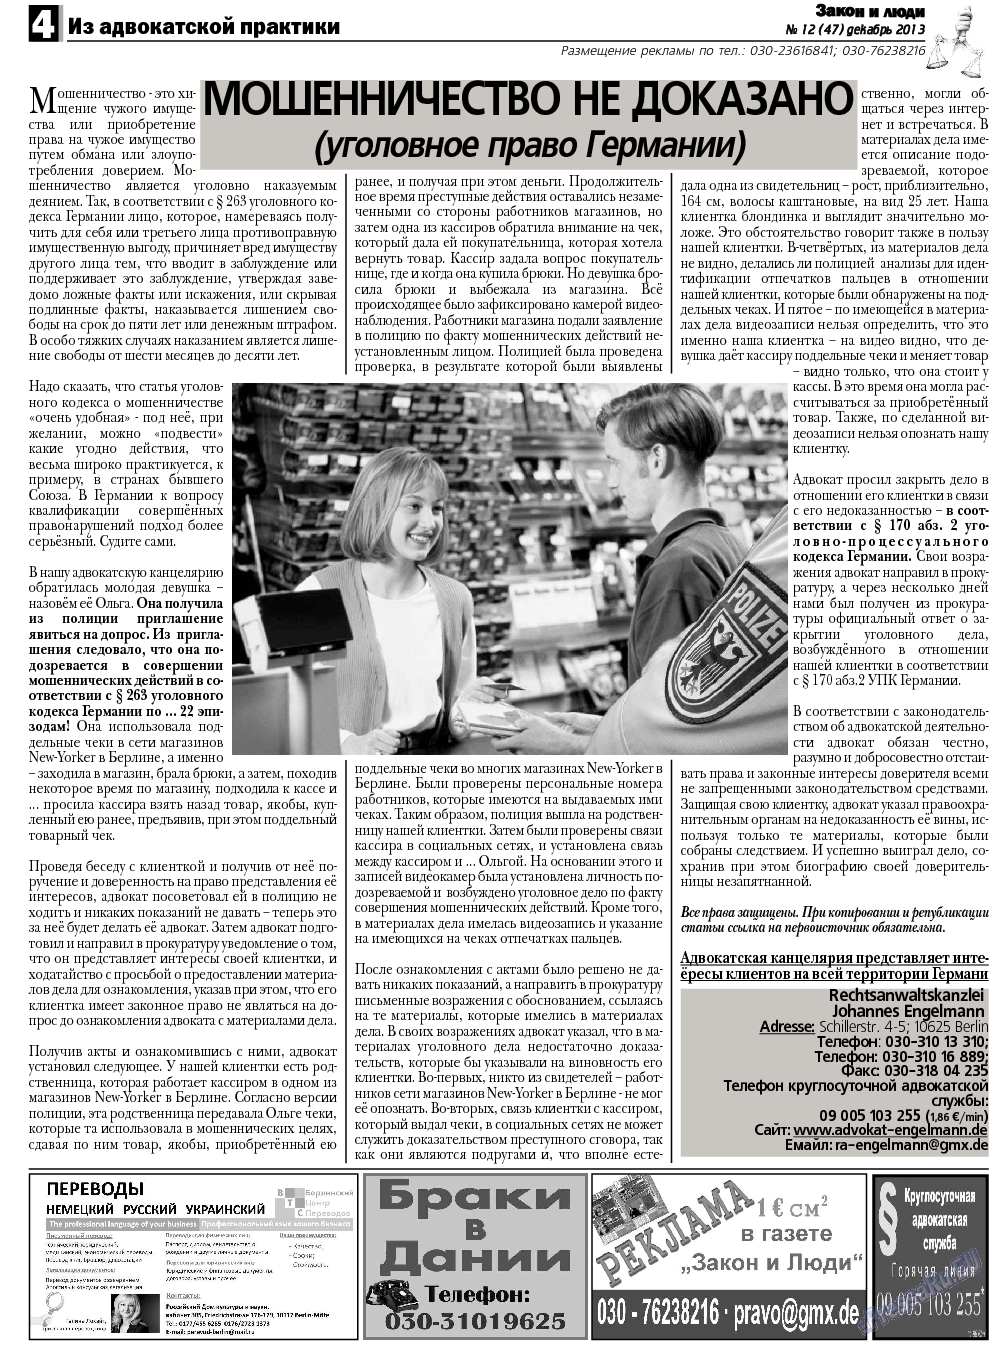 Закон и люди, газета. 2013 №12 стр.4